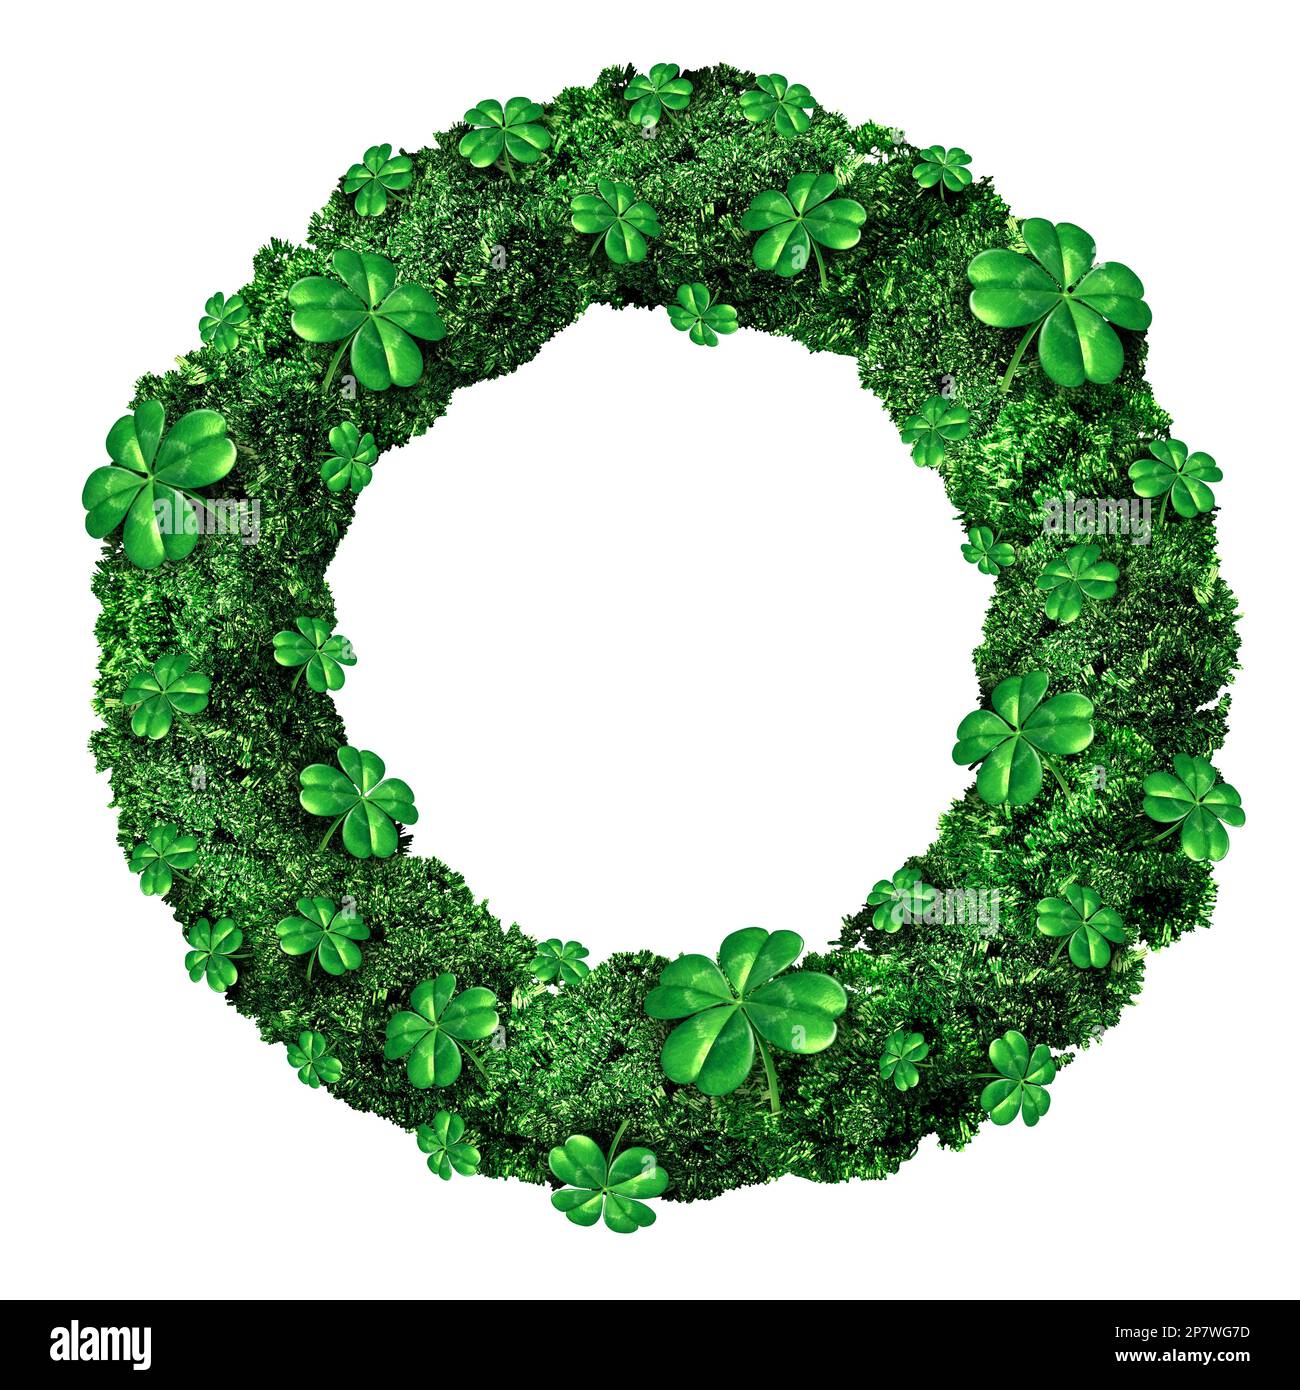 Der Kranz am Saint Patricks Day feiert im März irische Herkunft als dekoratives grünes Grafikelement zur Feier von St. Patrick. Stockfoto